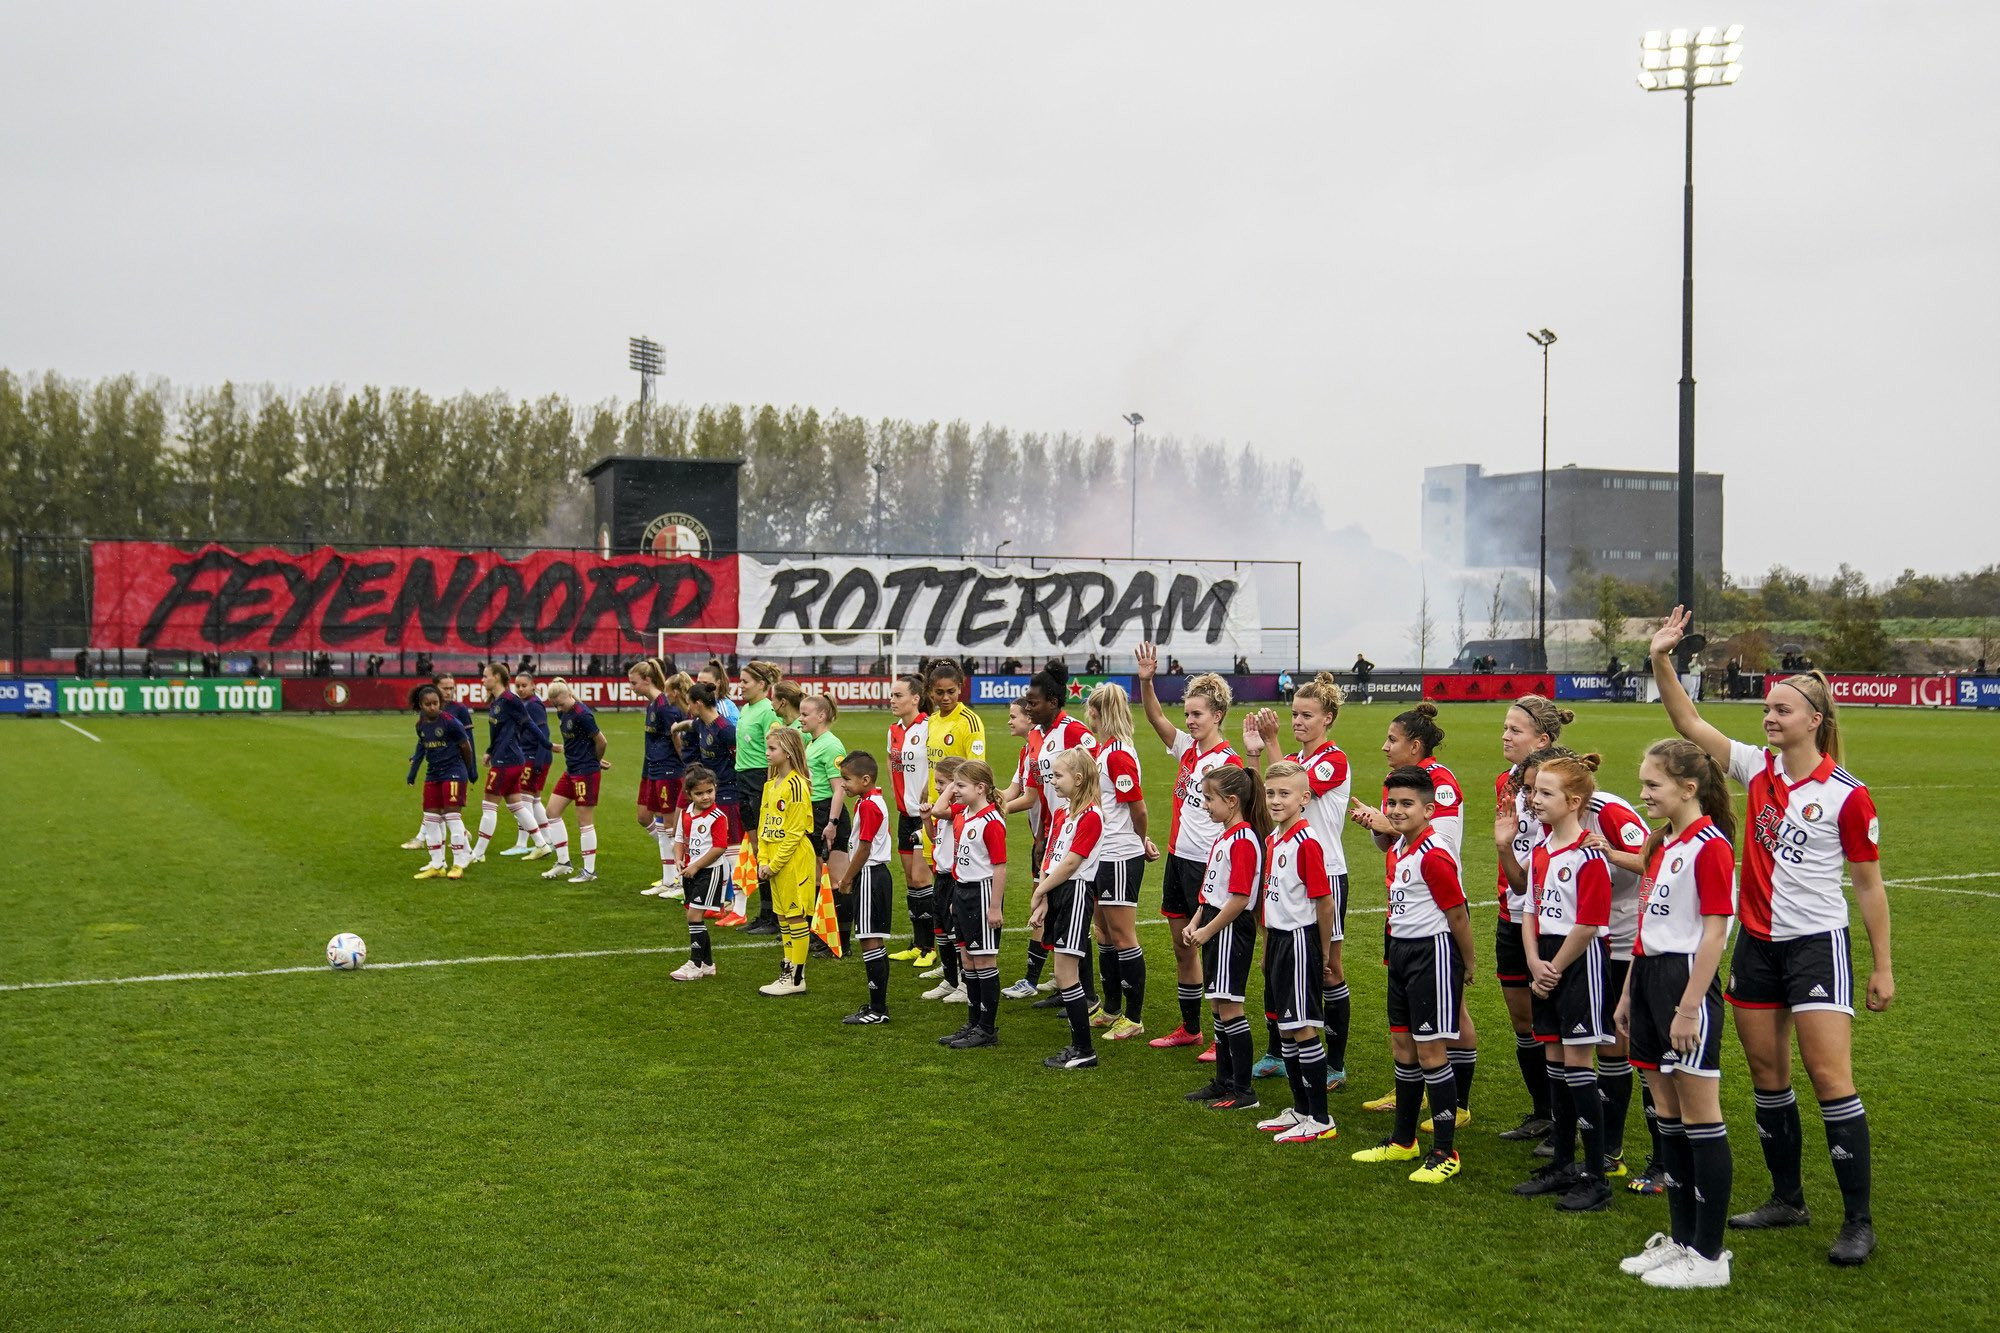 Gratis busvervoer naar Feyenoord V1 tegen PSV